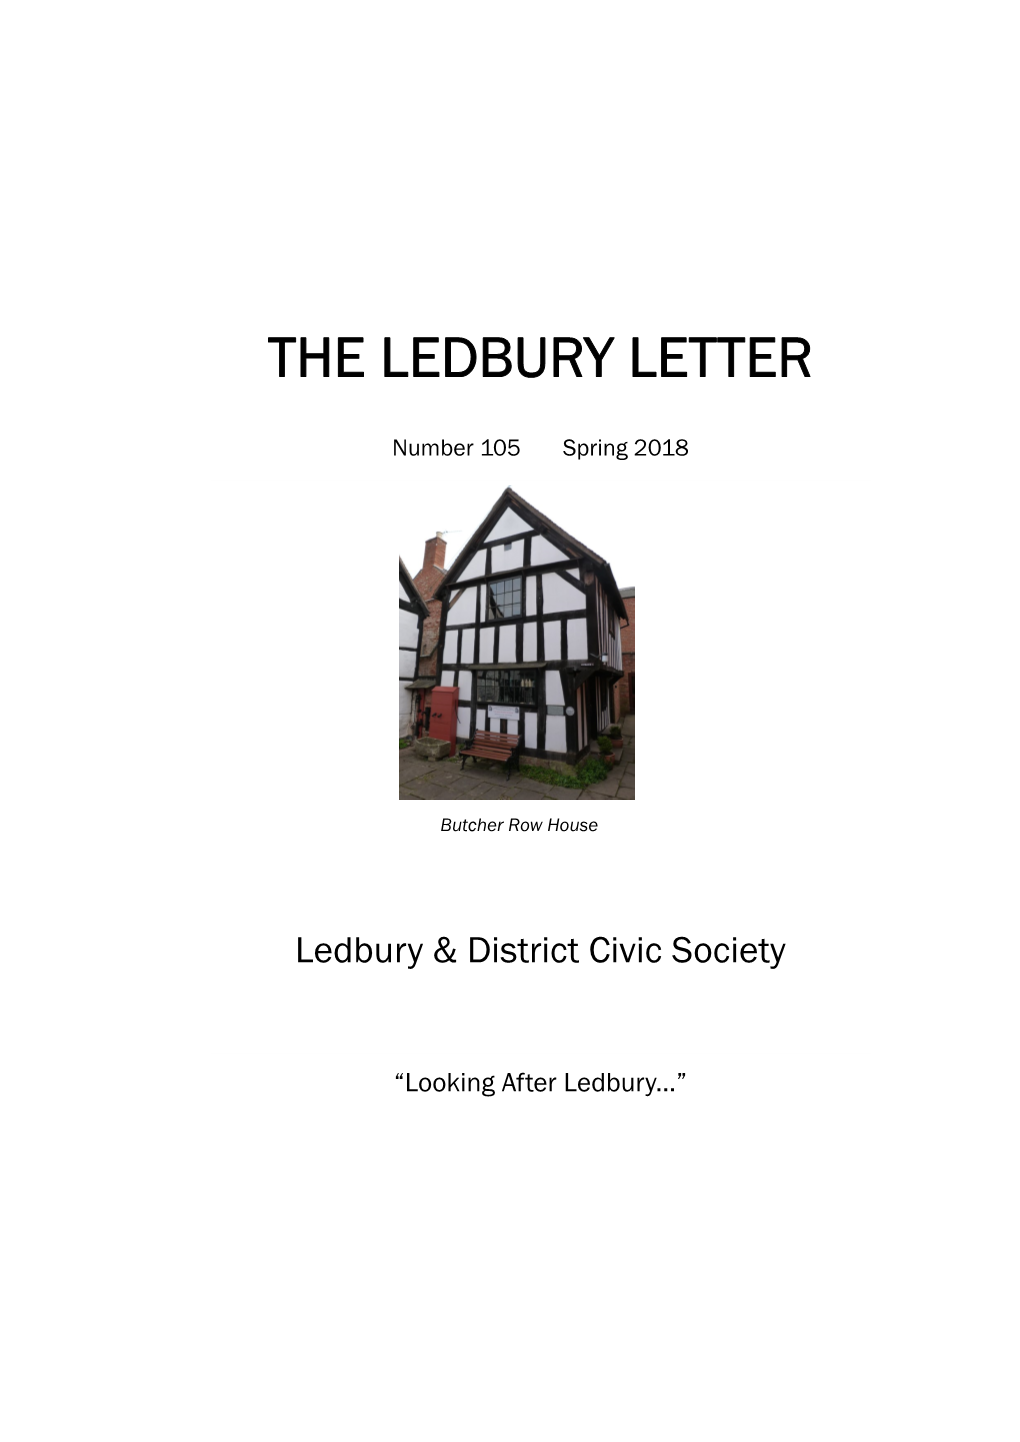 The Ledbury Letter